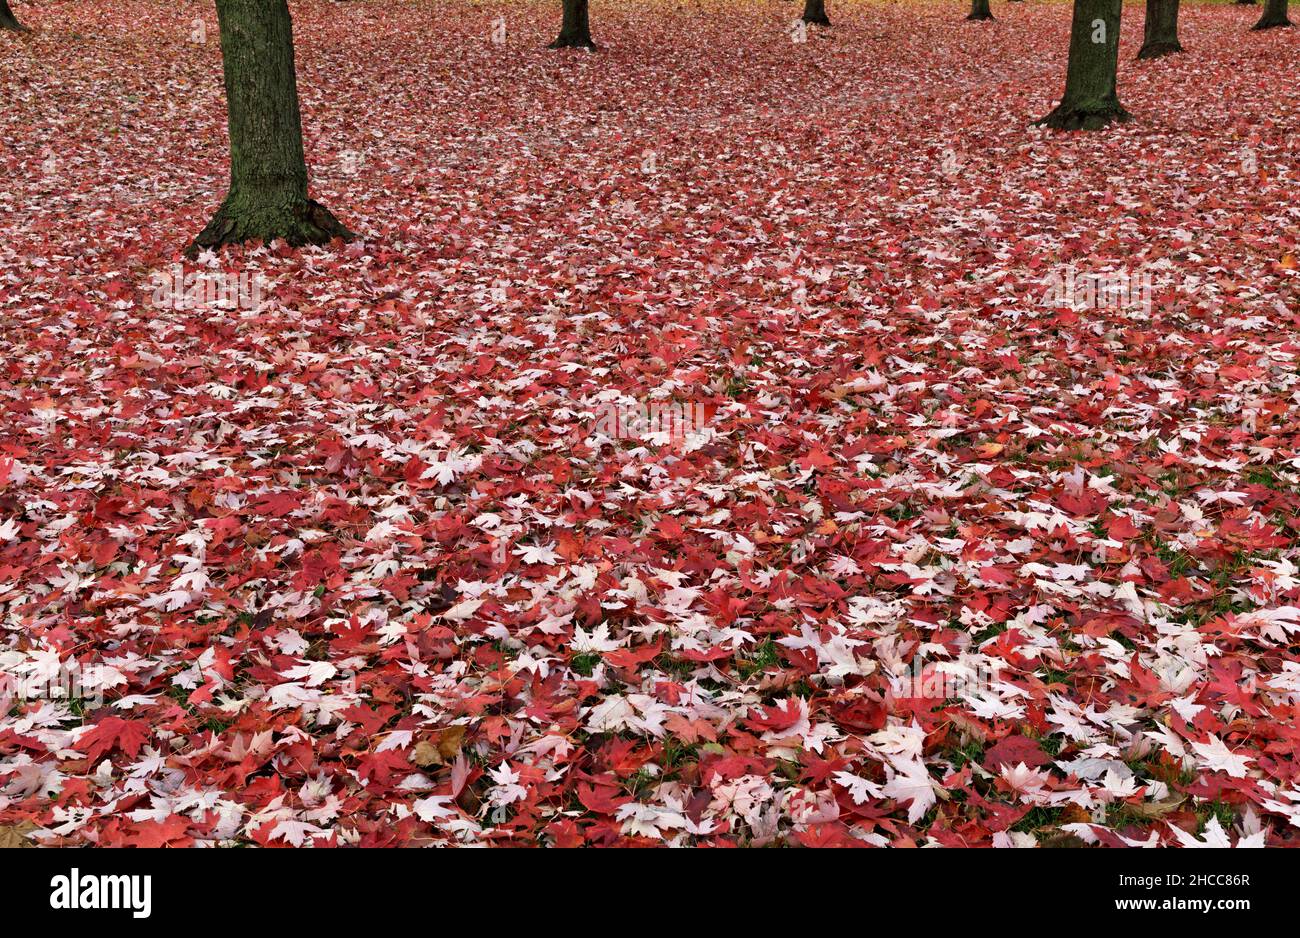 foglie d'acero rosso che coprono il terreno e tronchi d'albero Foto Stock